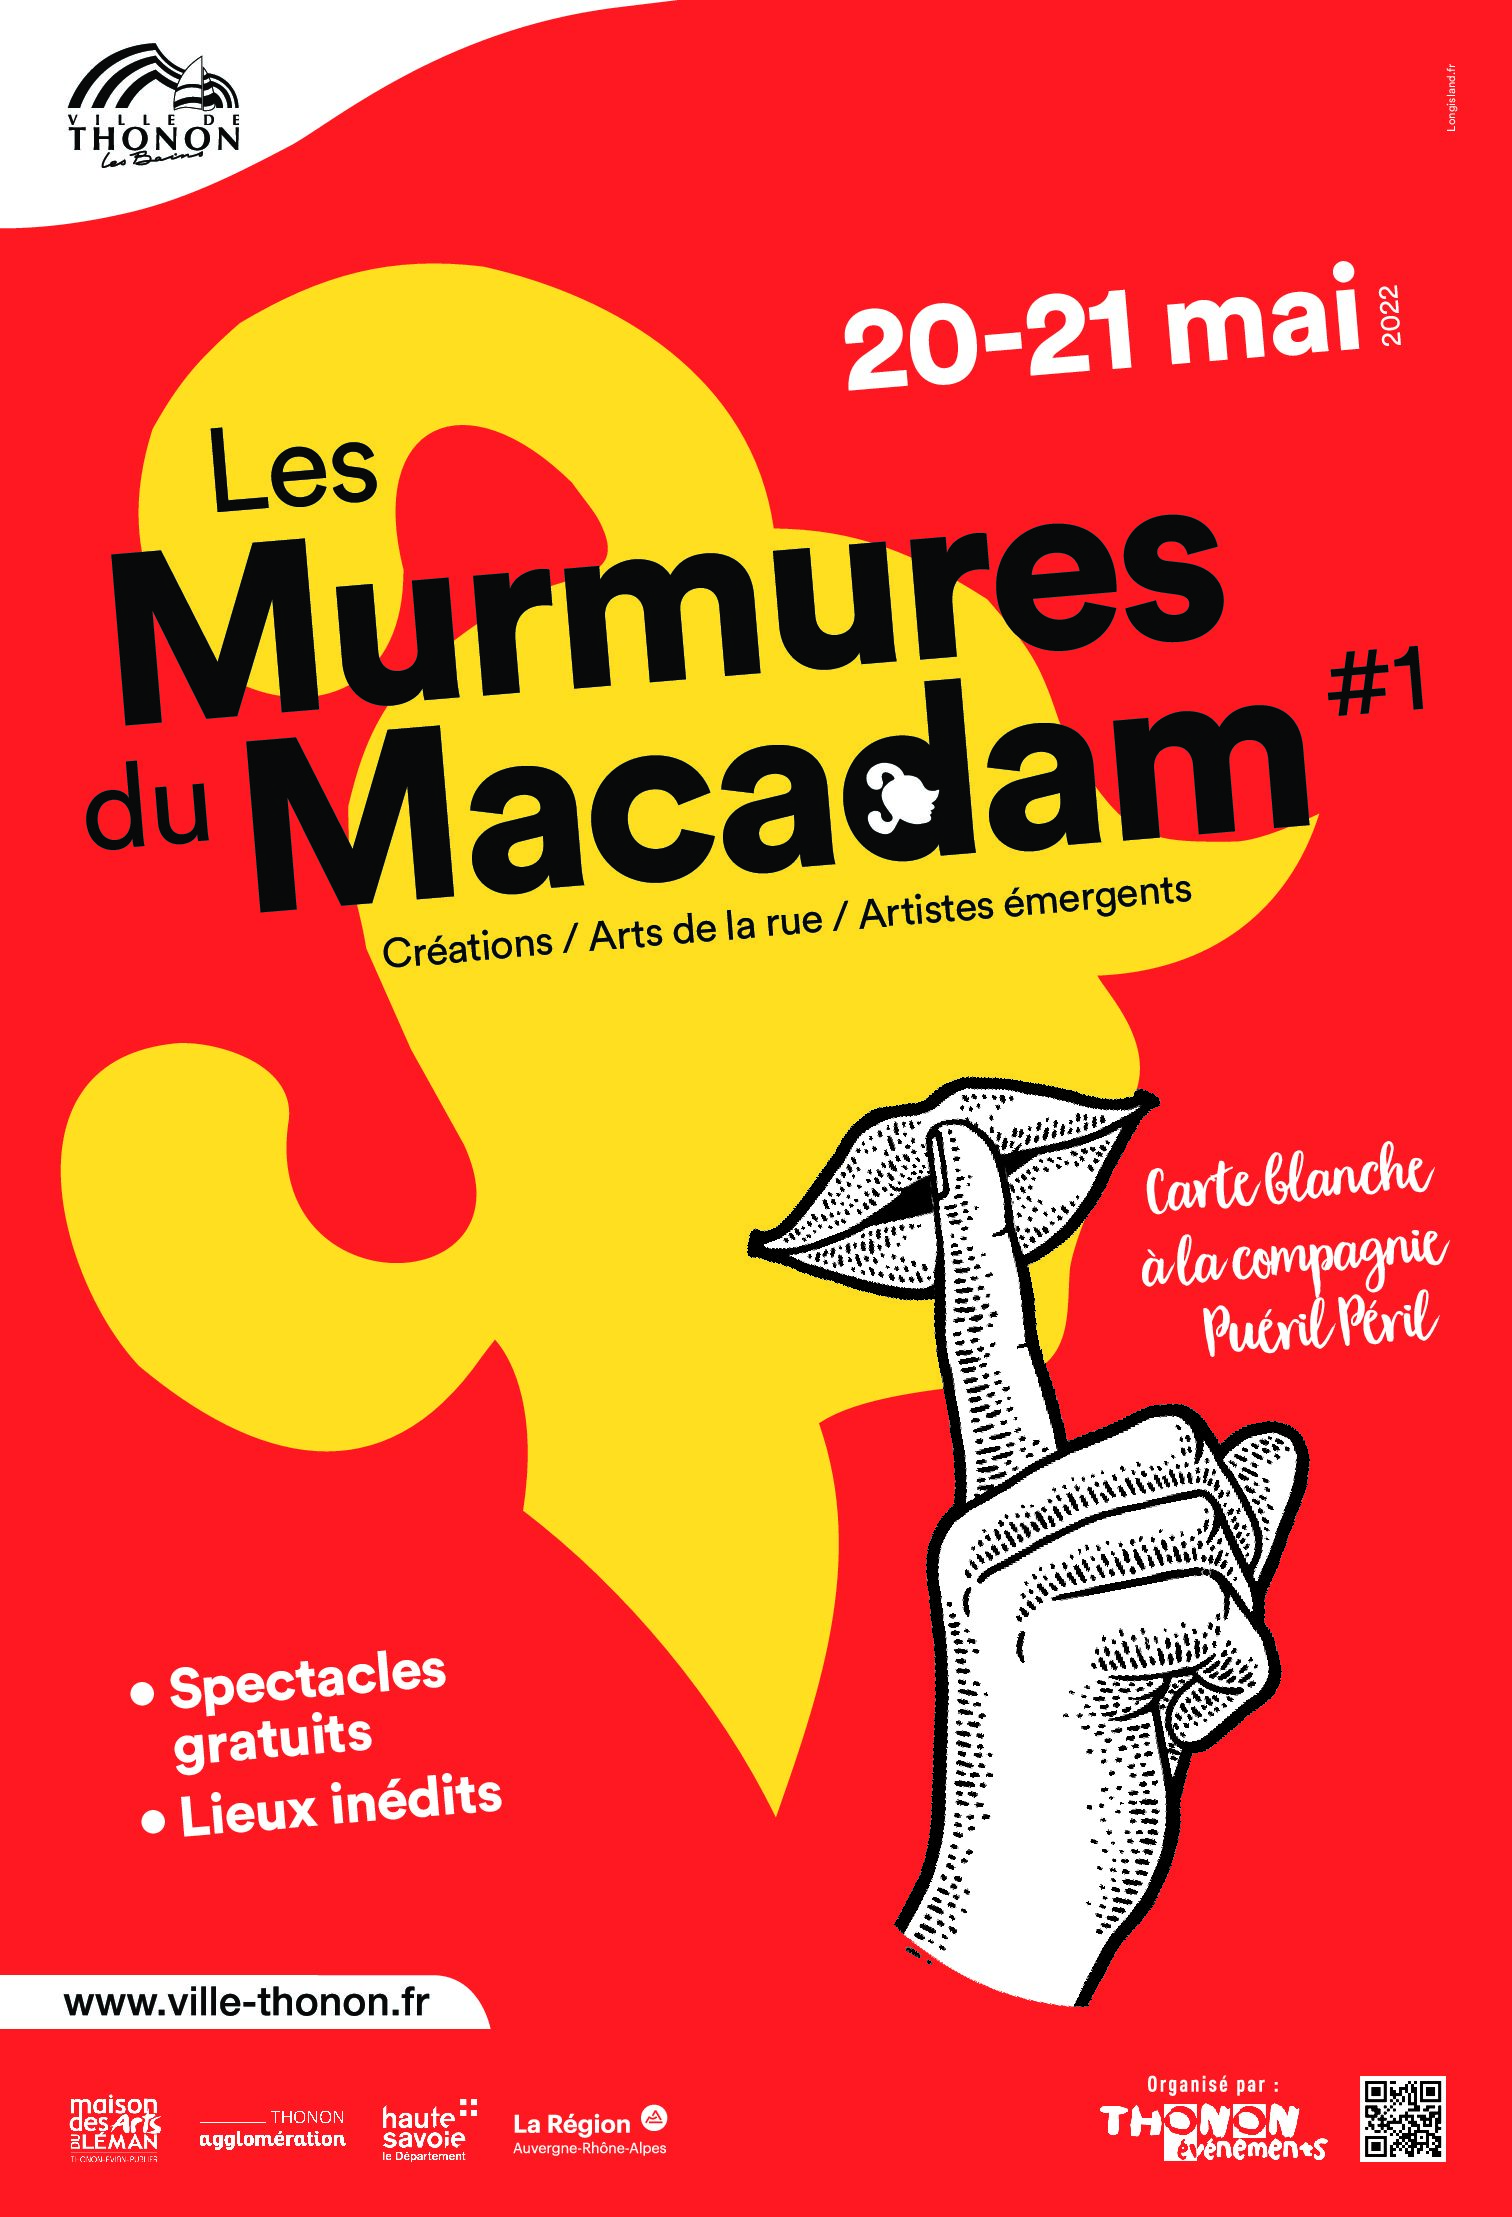 Notre nouvel événement, Les Murmures du Macadam !